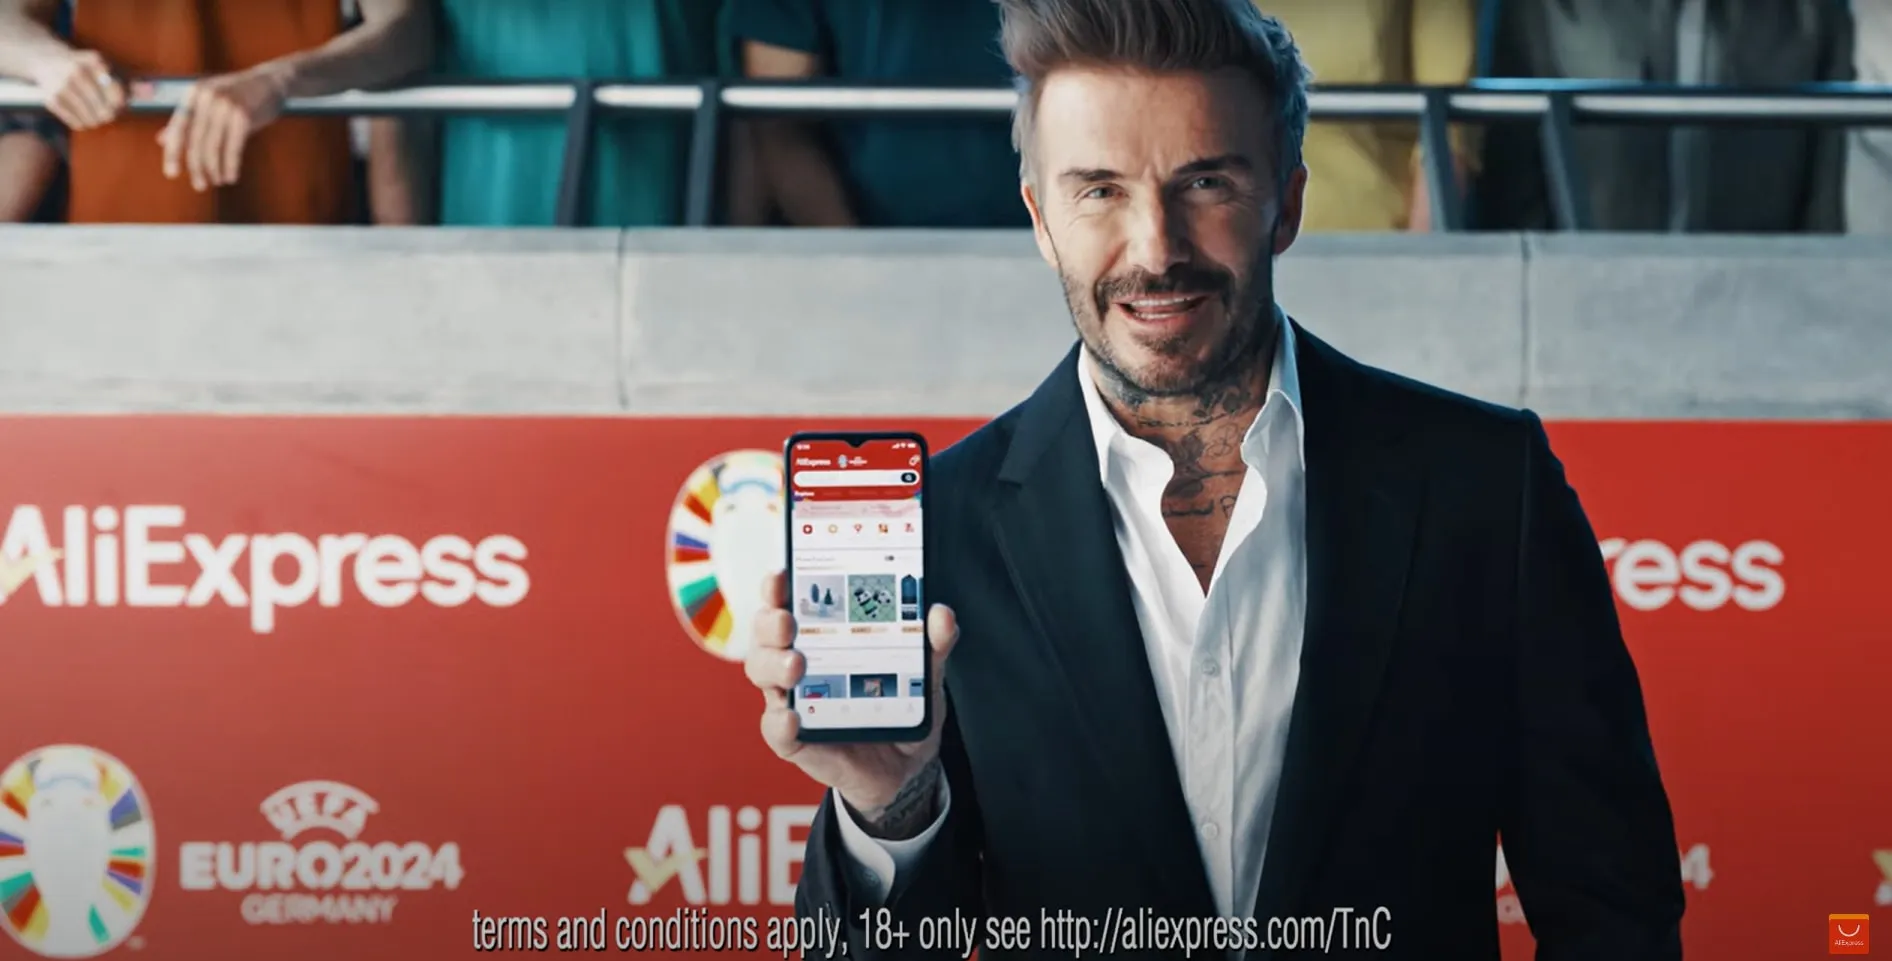 David Beckham é o novo embaixador global do Aliexpress